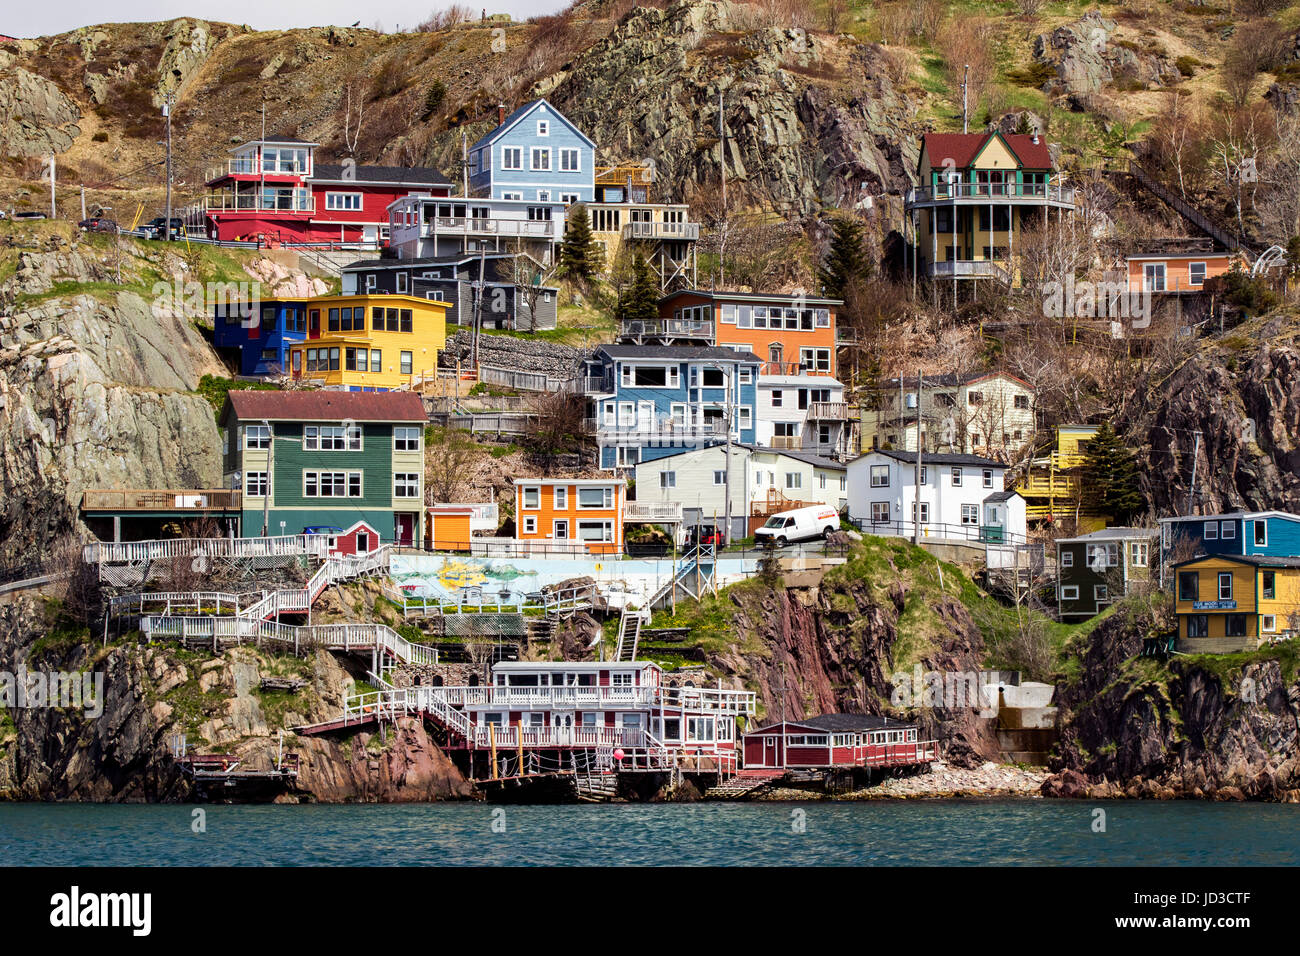 St. John's, Avalon Peninsula, Newfoundland, Canada Stock Photo